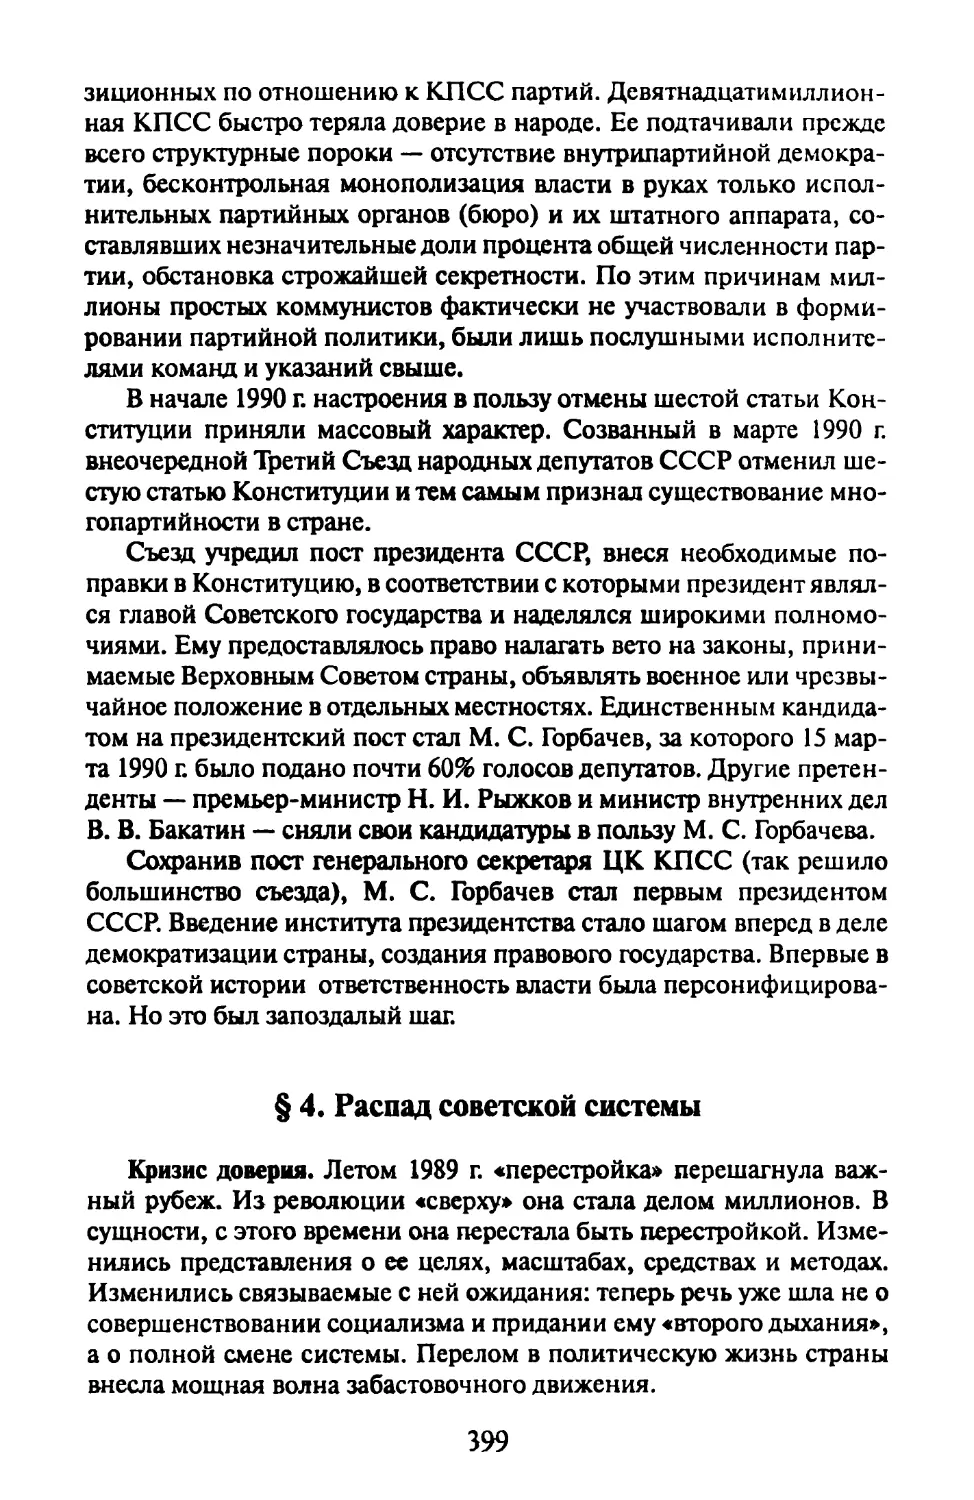 § 4. Распад советской системы